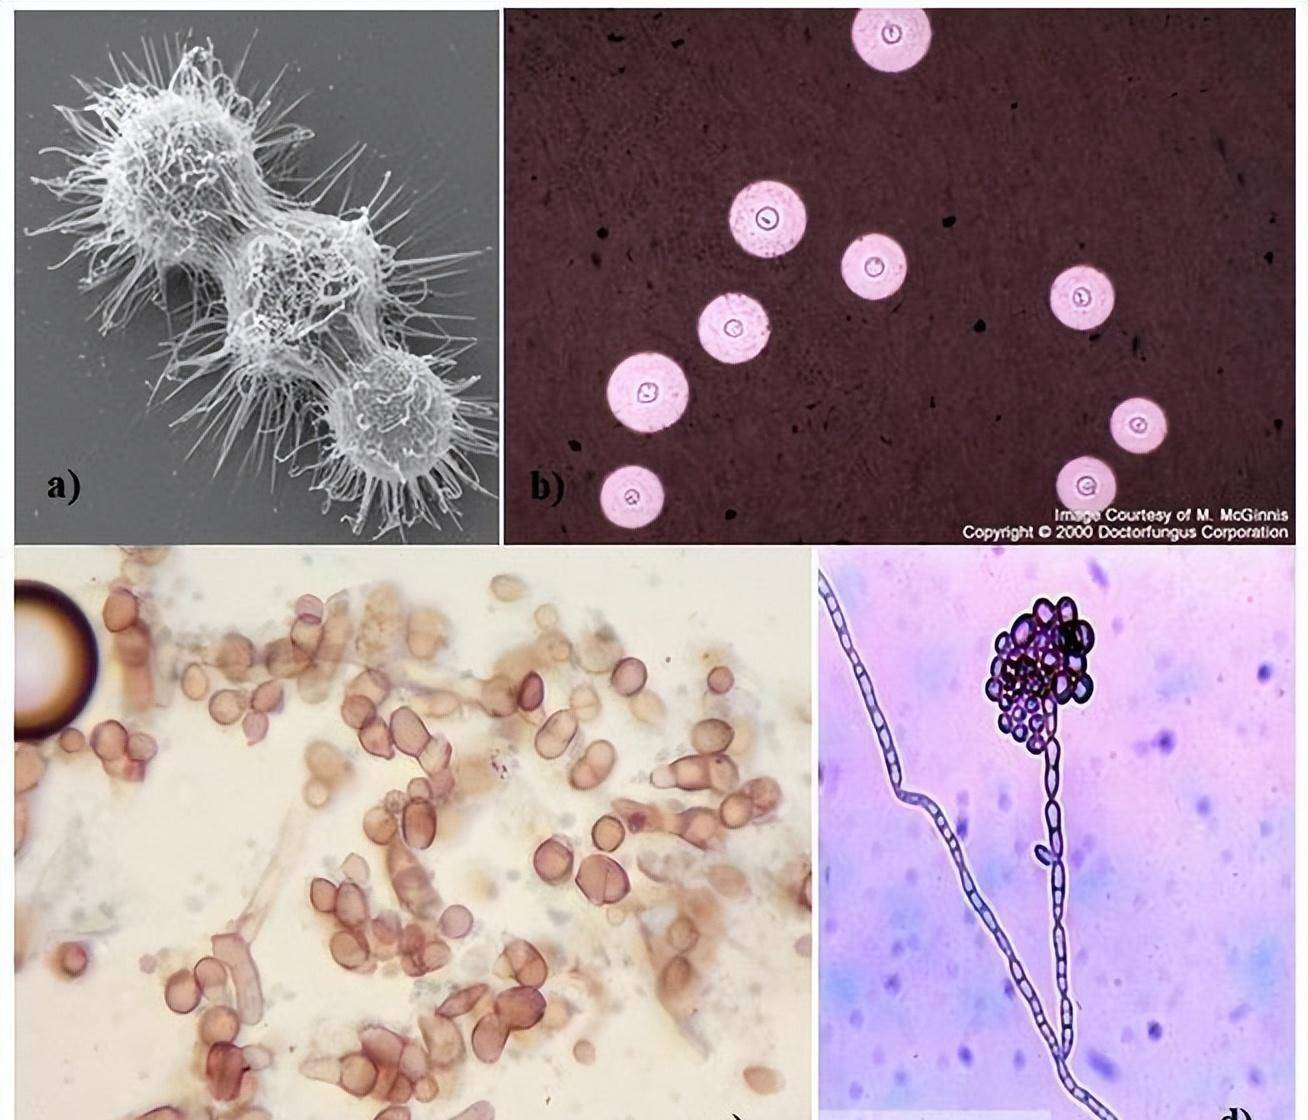 新型隐球菌在显微镜下菌体呈圆形,直径4~8微米,菌落边缘为黑色